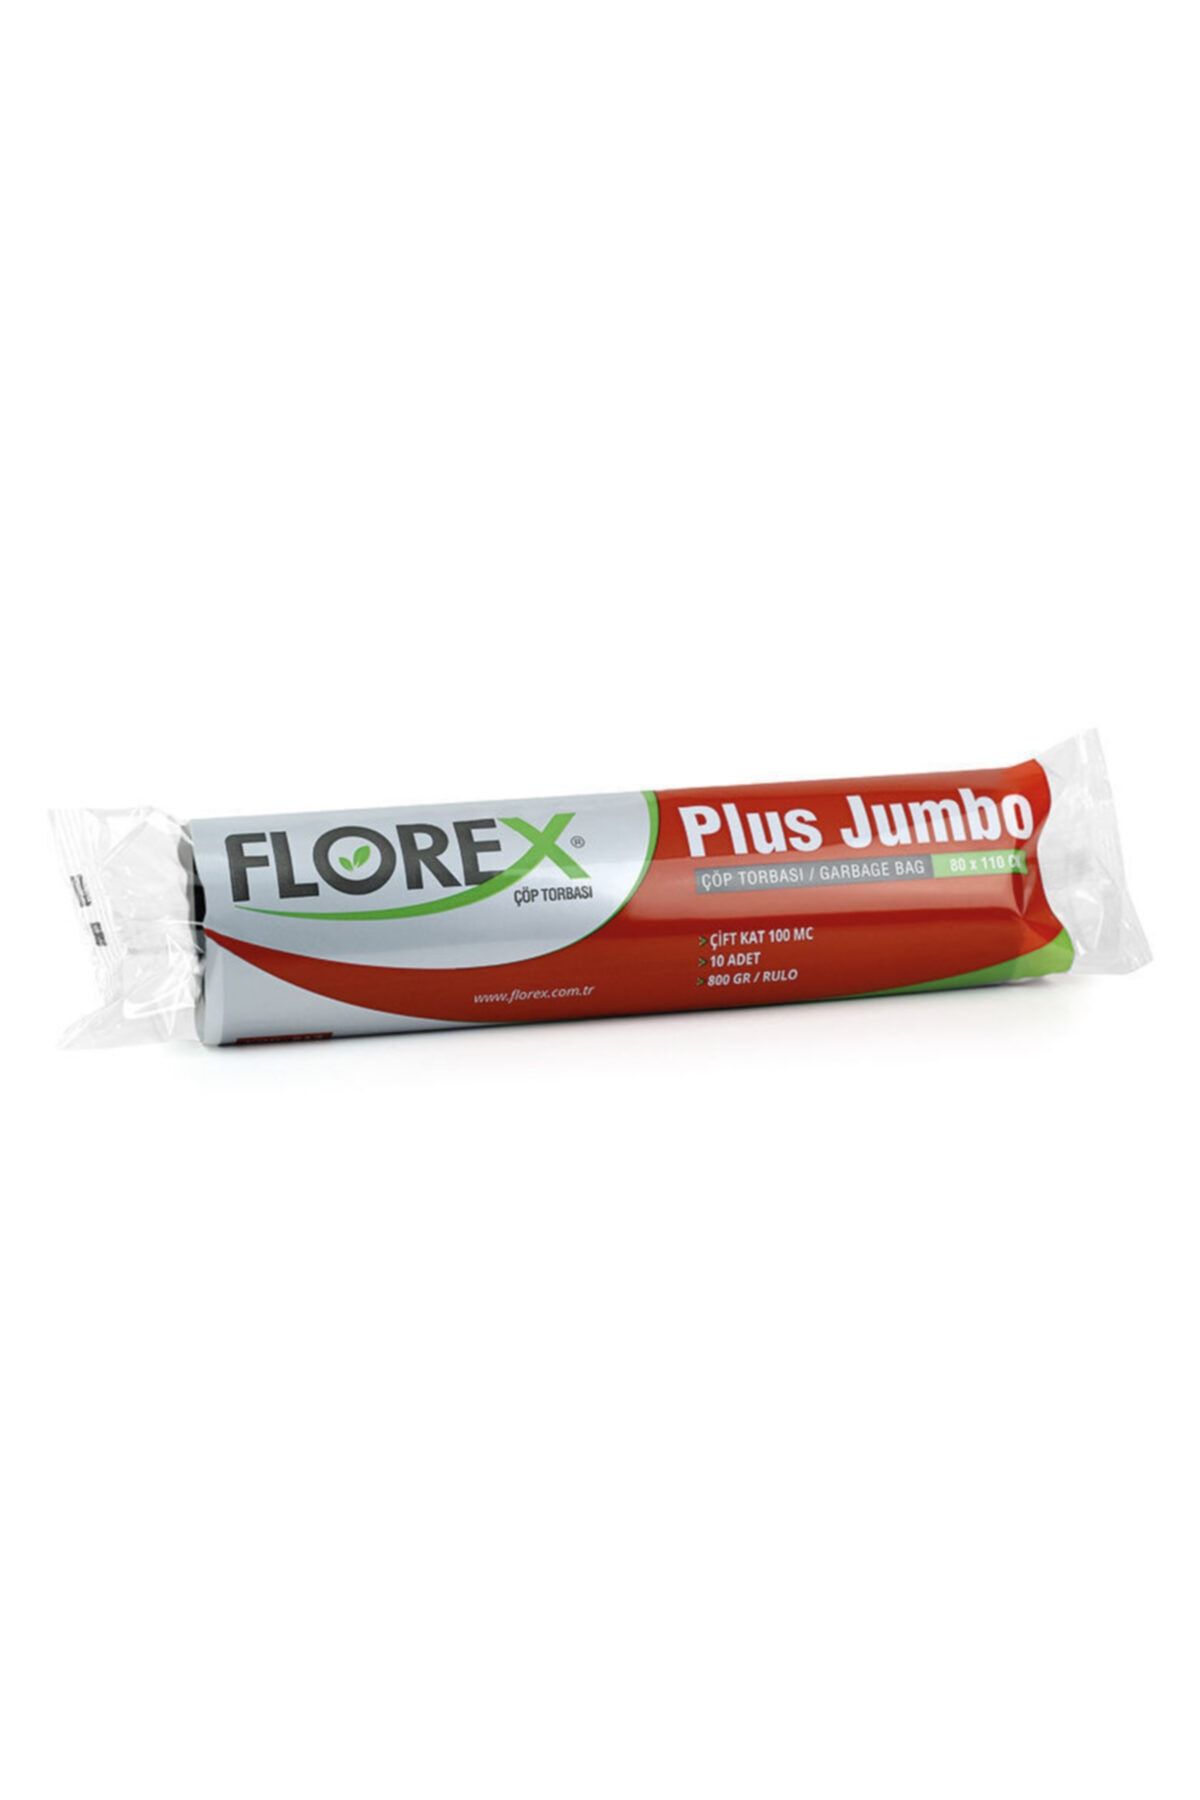 Florex Plus Jumbo Boy Çöp Poşeti 800 Gr. Koli Içi 10 Paket A Kalite Ürün